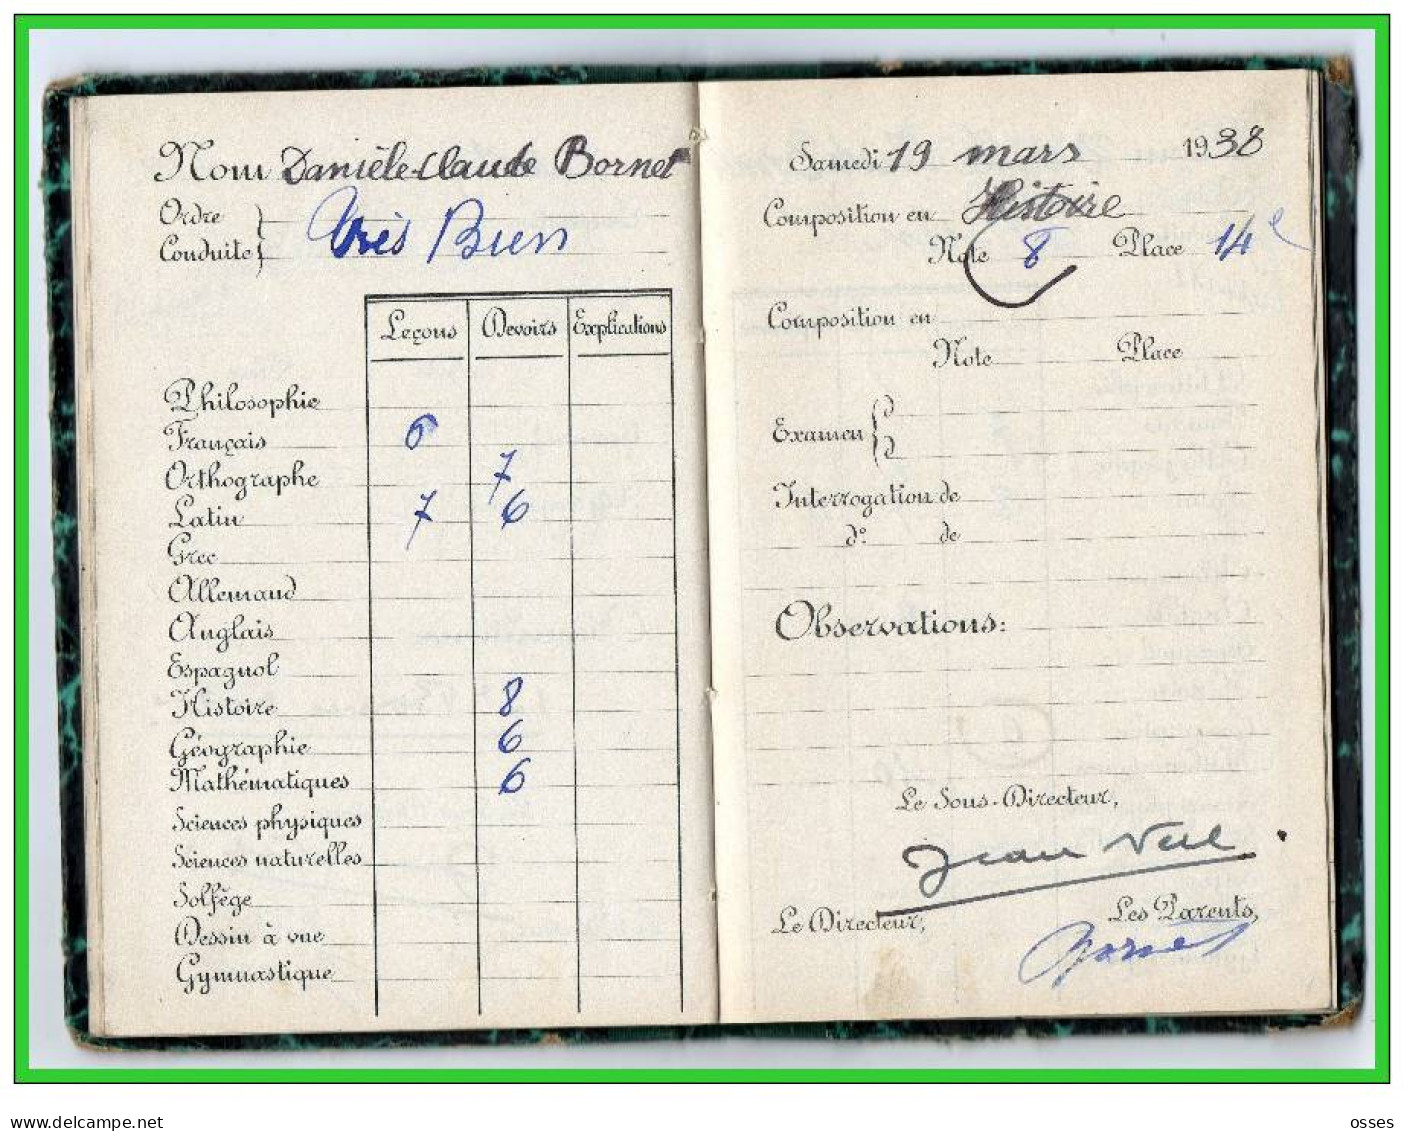 Carnet de Notes ECOLE ALSACIENNE à Paris. AnnéeScolaire 1937/38 (recto,verso, intérieurs)